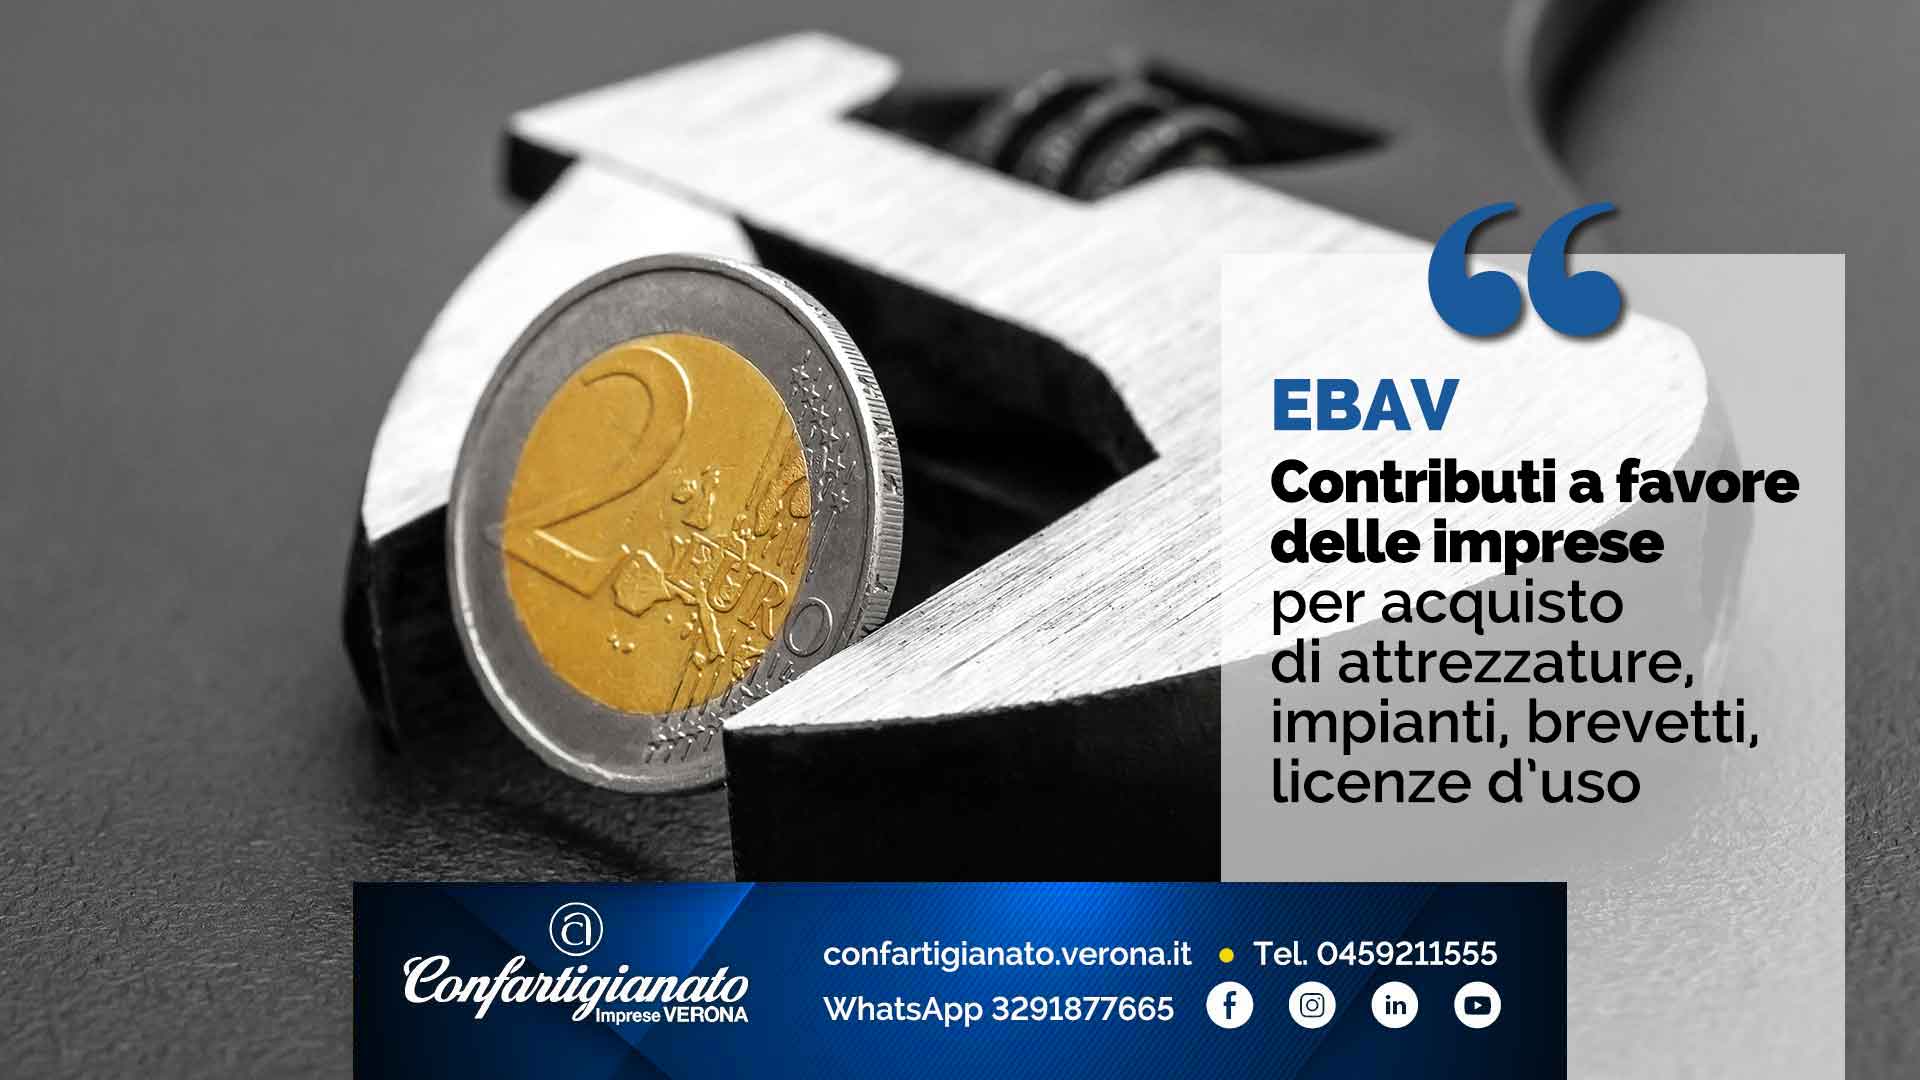 EBAV – Contributi a favore delle imprese per acquisto di attrezzature, impianti, brevetti, licenze d’uso